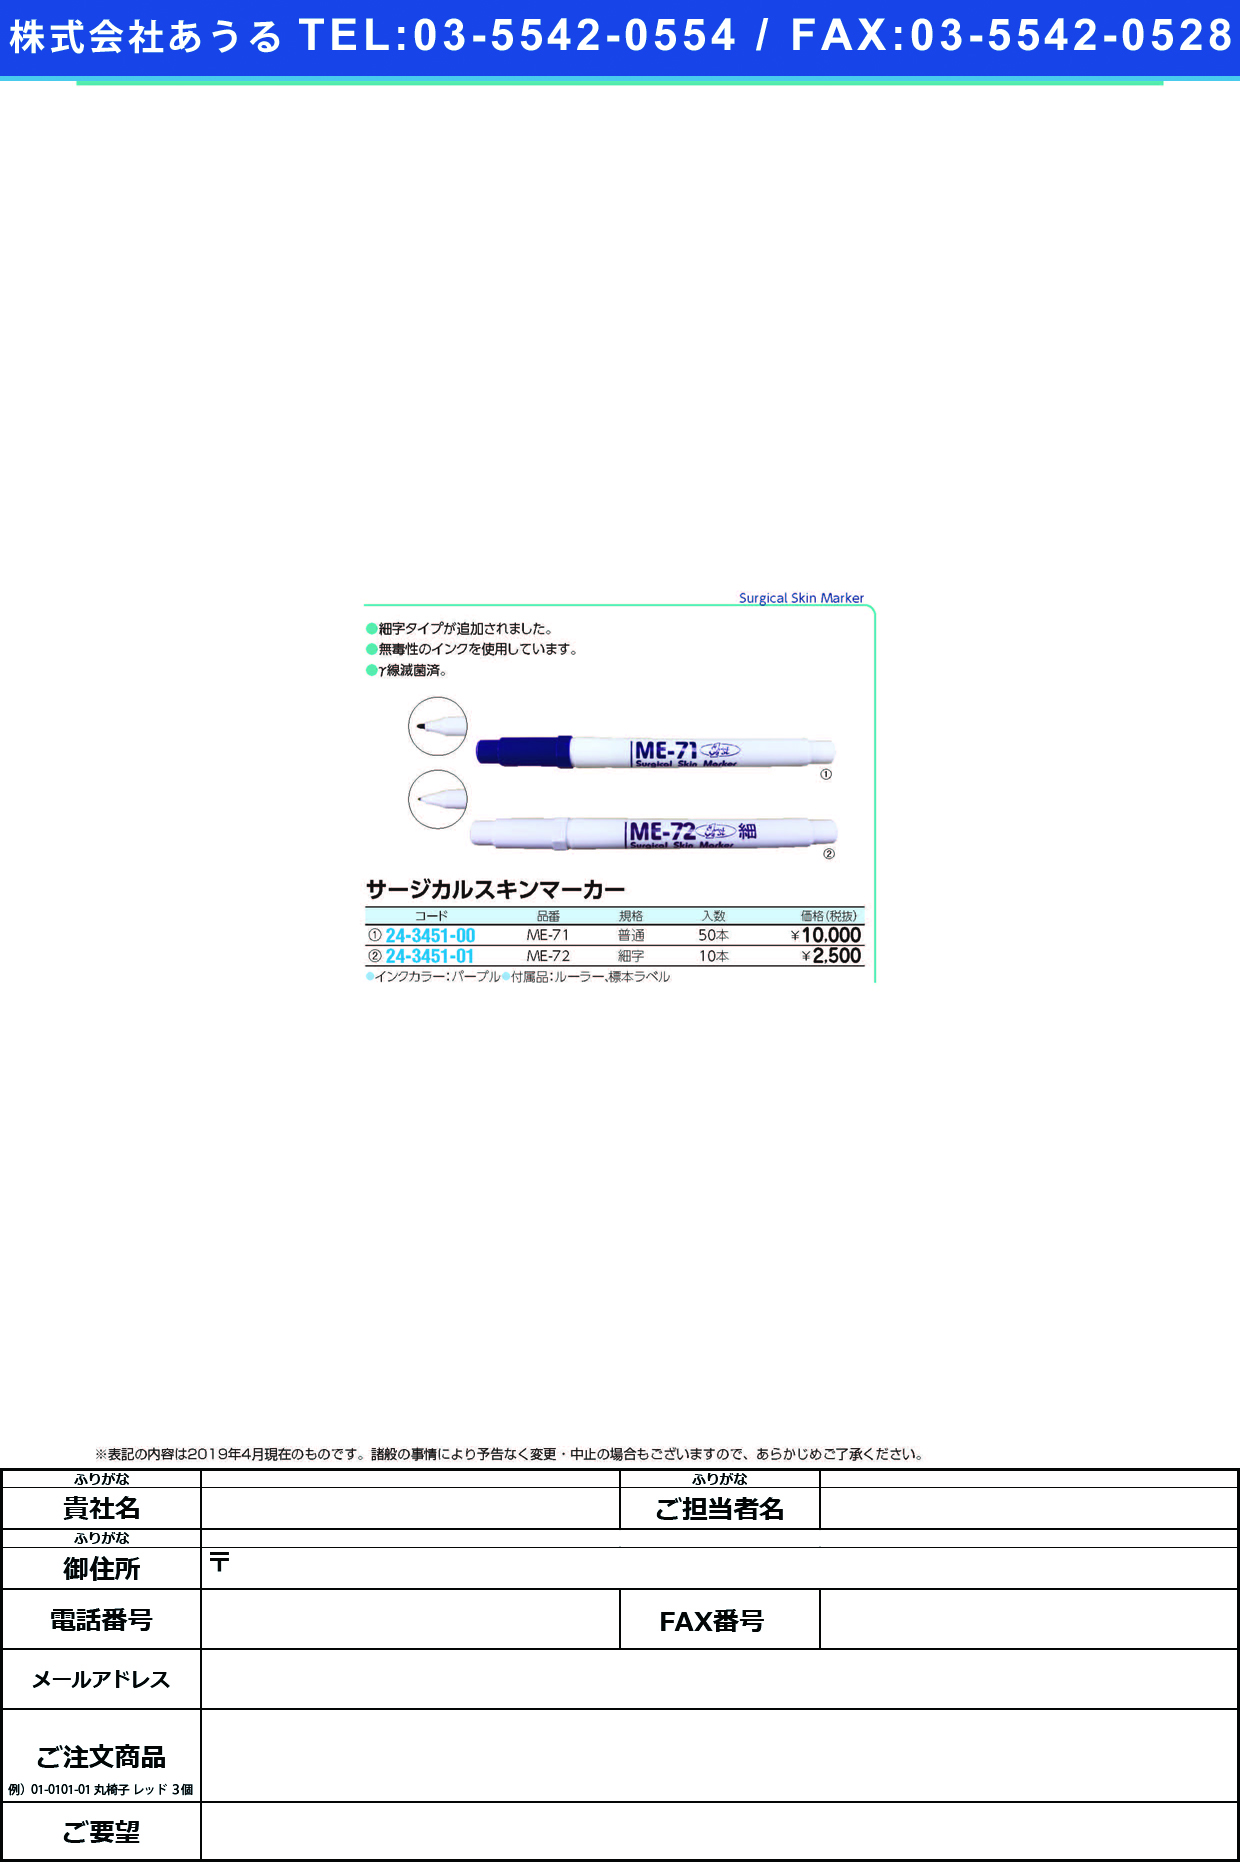 (24-3451-00)サージカルスキンマーカー ME-71(50ﾎﾟﾝｲﾘ) ｻｰｼﾞｶﾙｽｷﾝﾏｰｶｰ【1箱単位】【2019年カタログ商品】